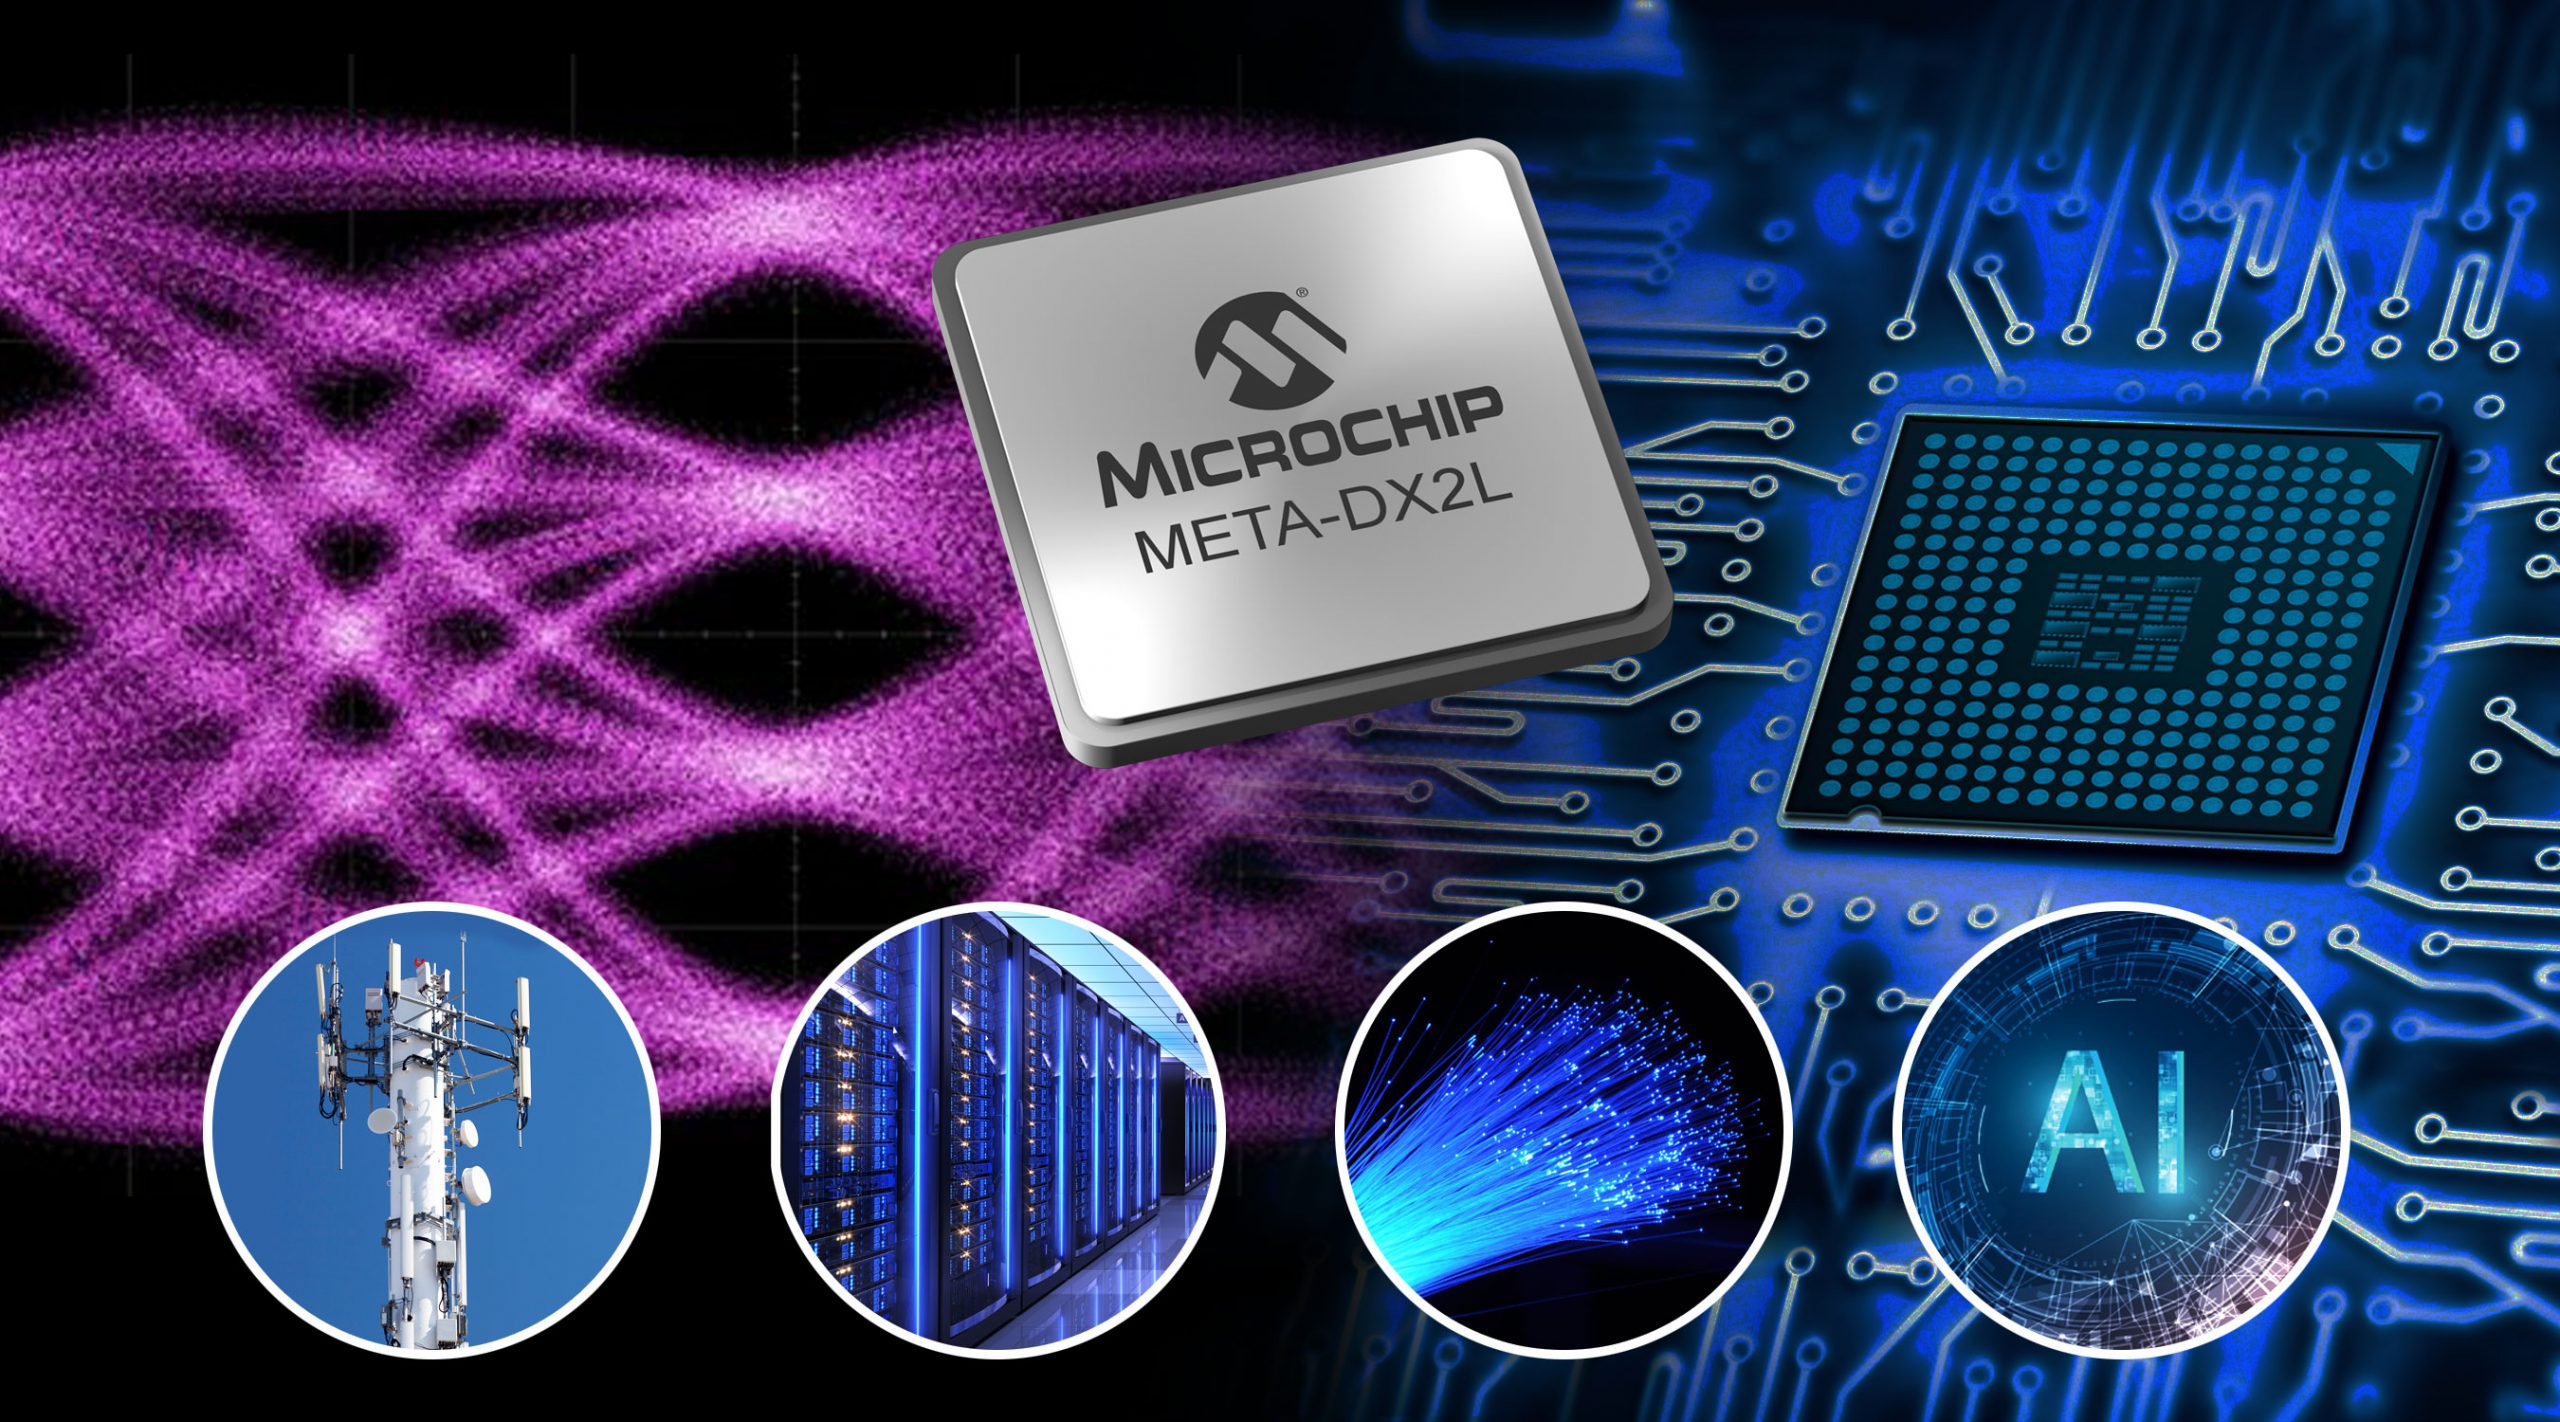 Microchip công bố giải pháp lớp vật lý mạng Ethernet 1.6 Terabit có kích thước nhỏ gọn nhất trong ngành với băng thông kết nối lên tới 800 GbE dành cho các trung tâm dữ liệu đám mây, ứng dụng 5G và AI